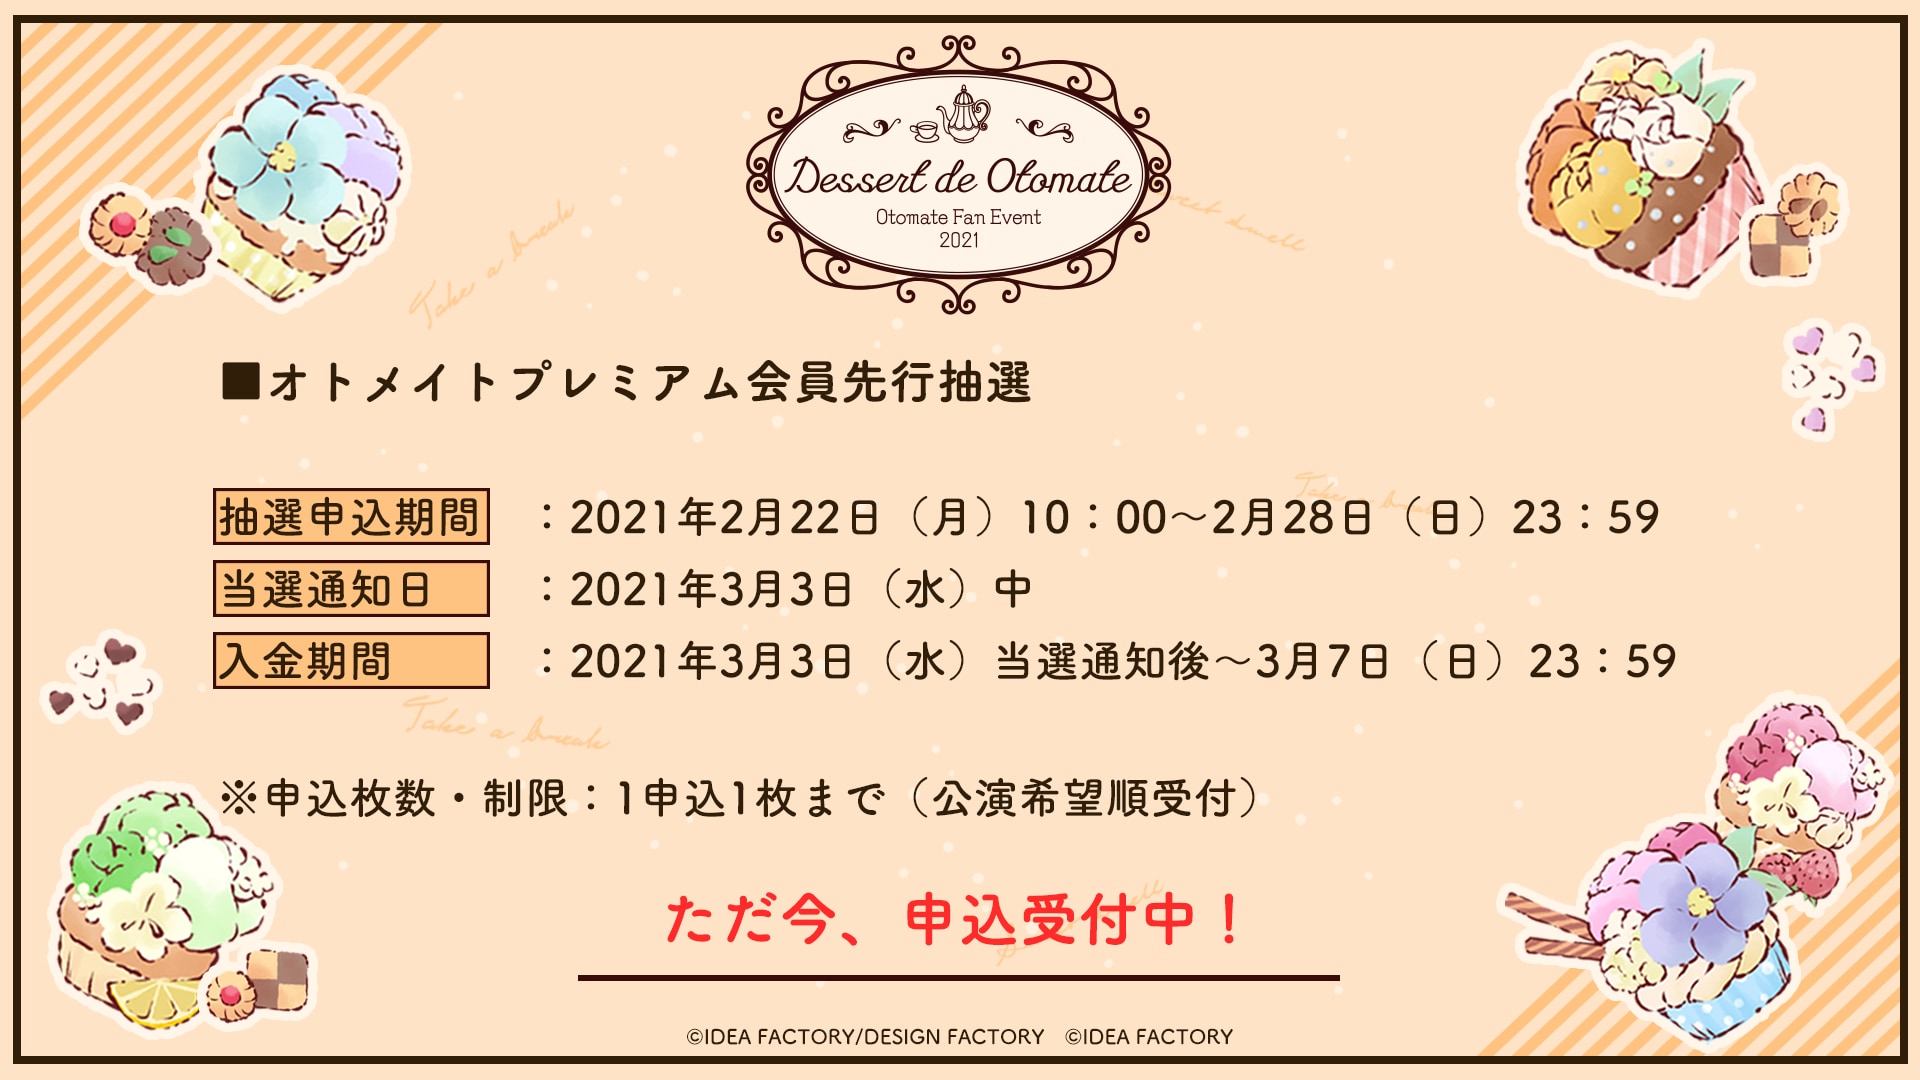 オトメイトファンイベント「Dessert de Otomate」チケット情報